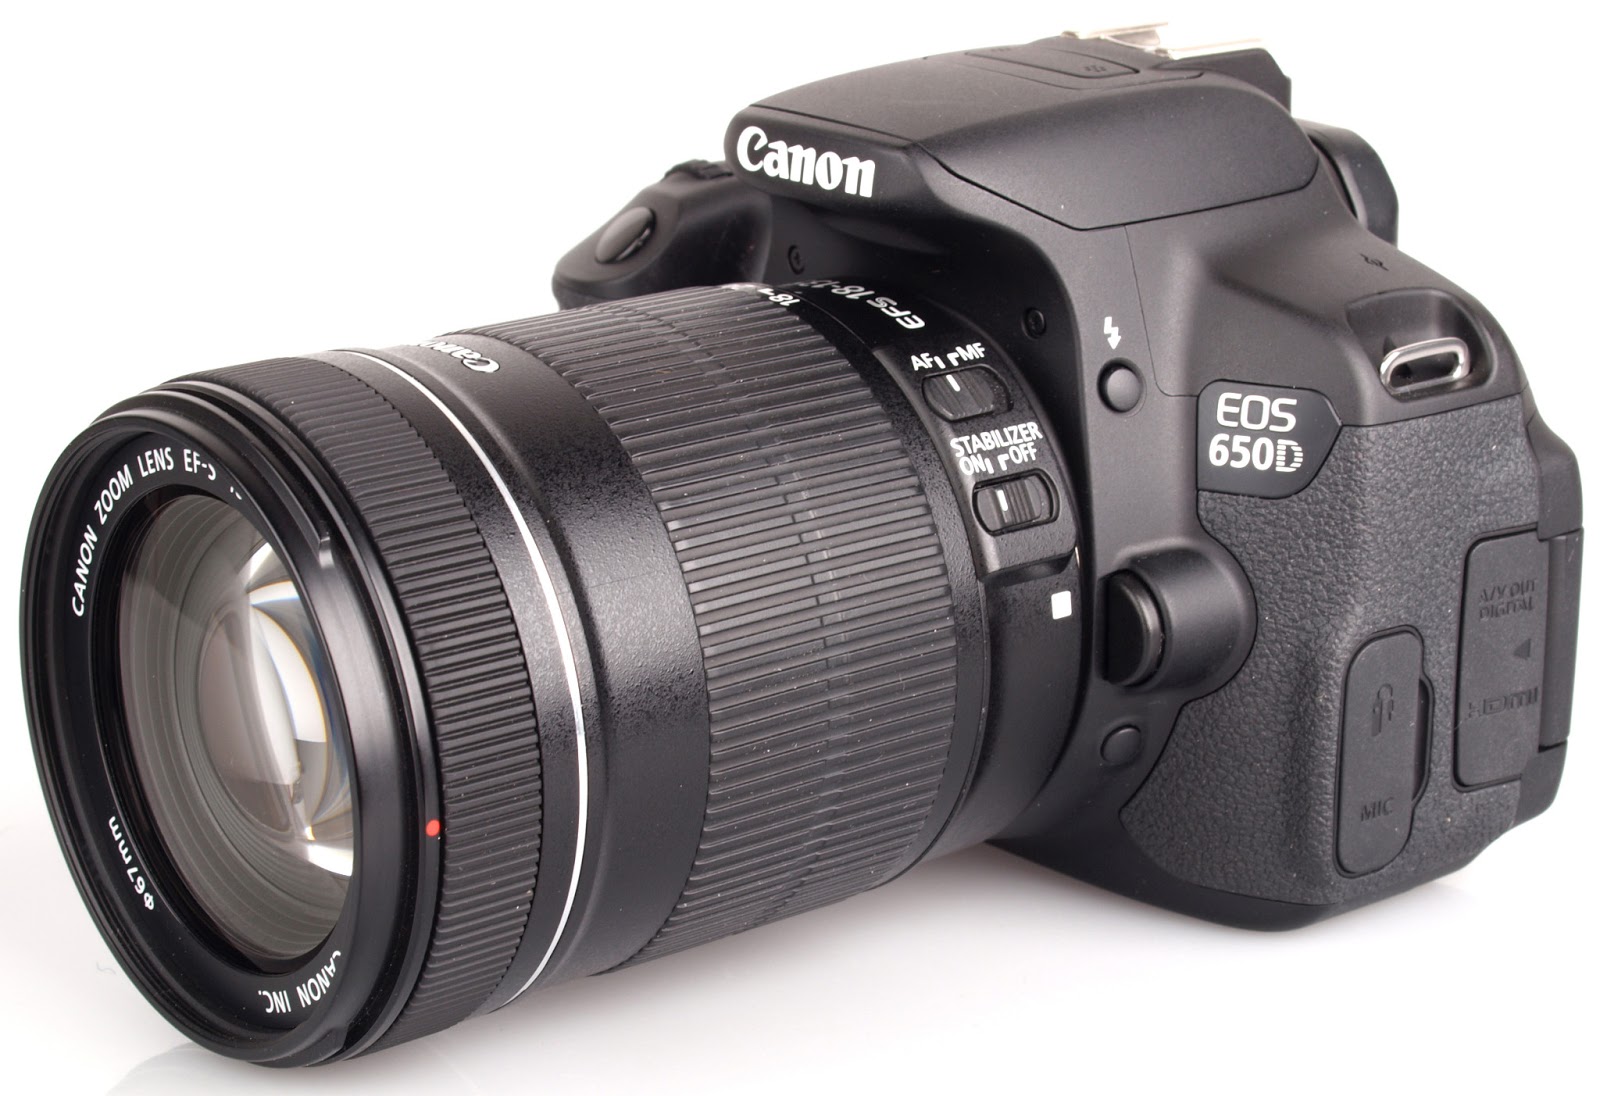 Harga kamera dslr canon juni 2013 harga kamera dslr canon eos 6d built 